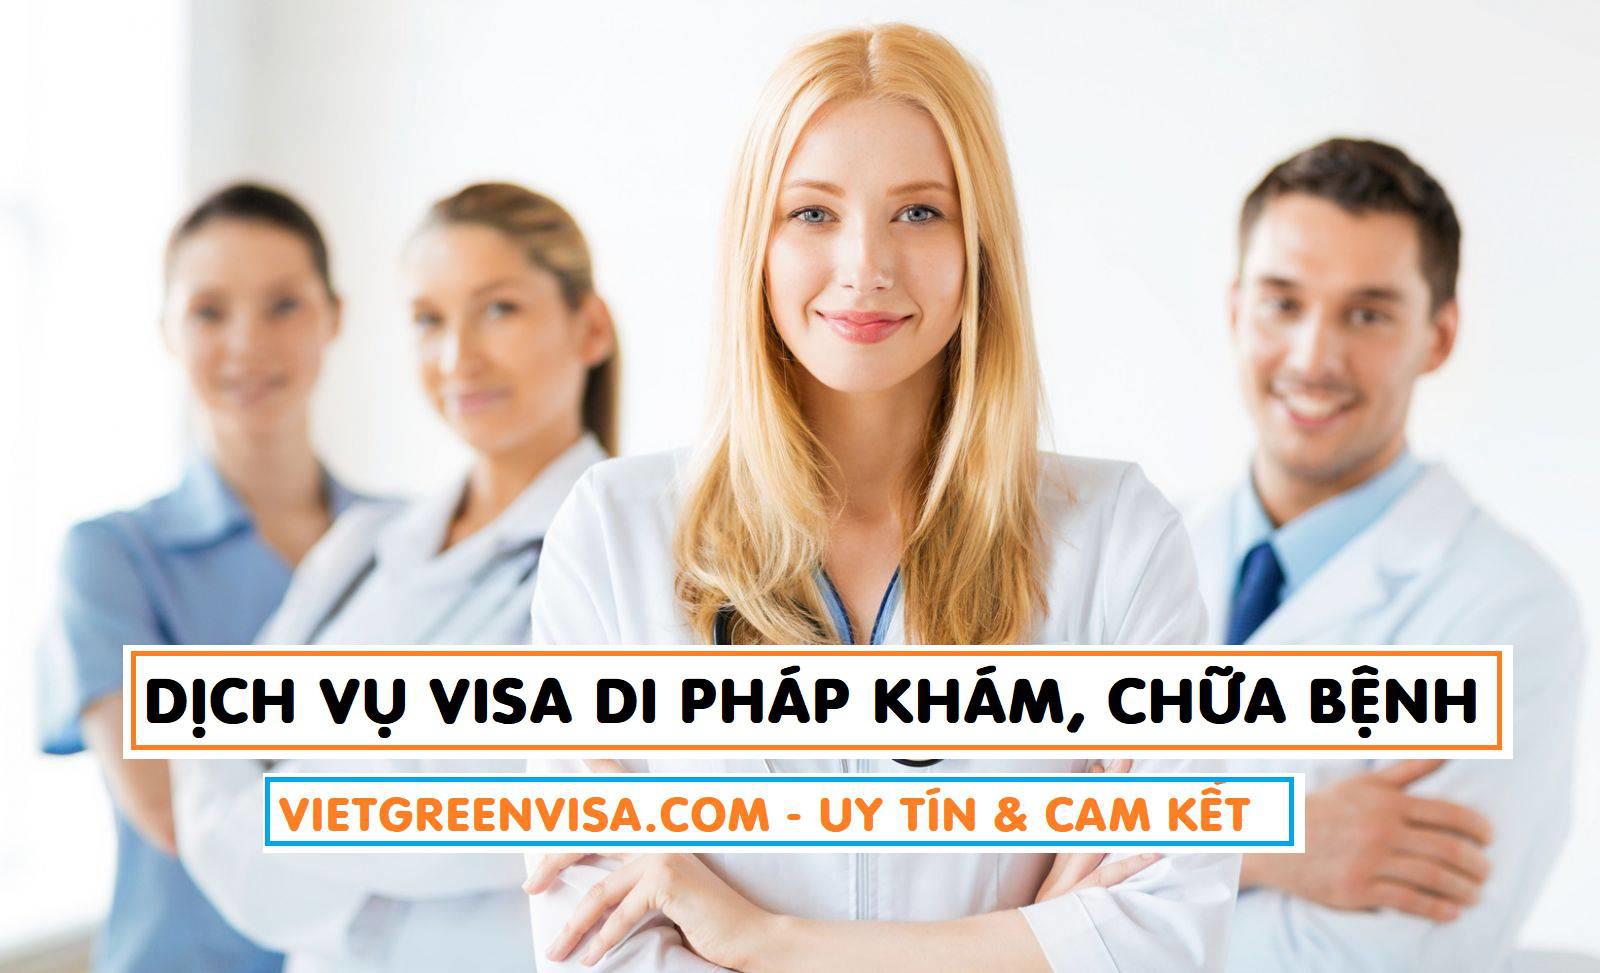 Dịch vụ làm visa đi Pháp khám chữa bệnh cao cấp + Dịch vụ Visa Pháp cao cấp